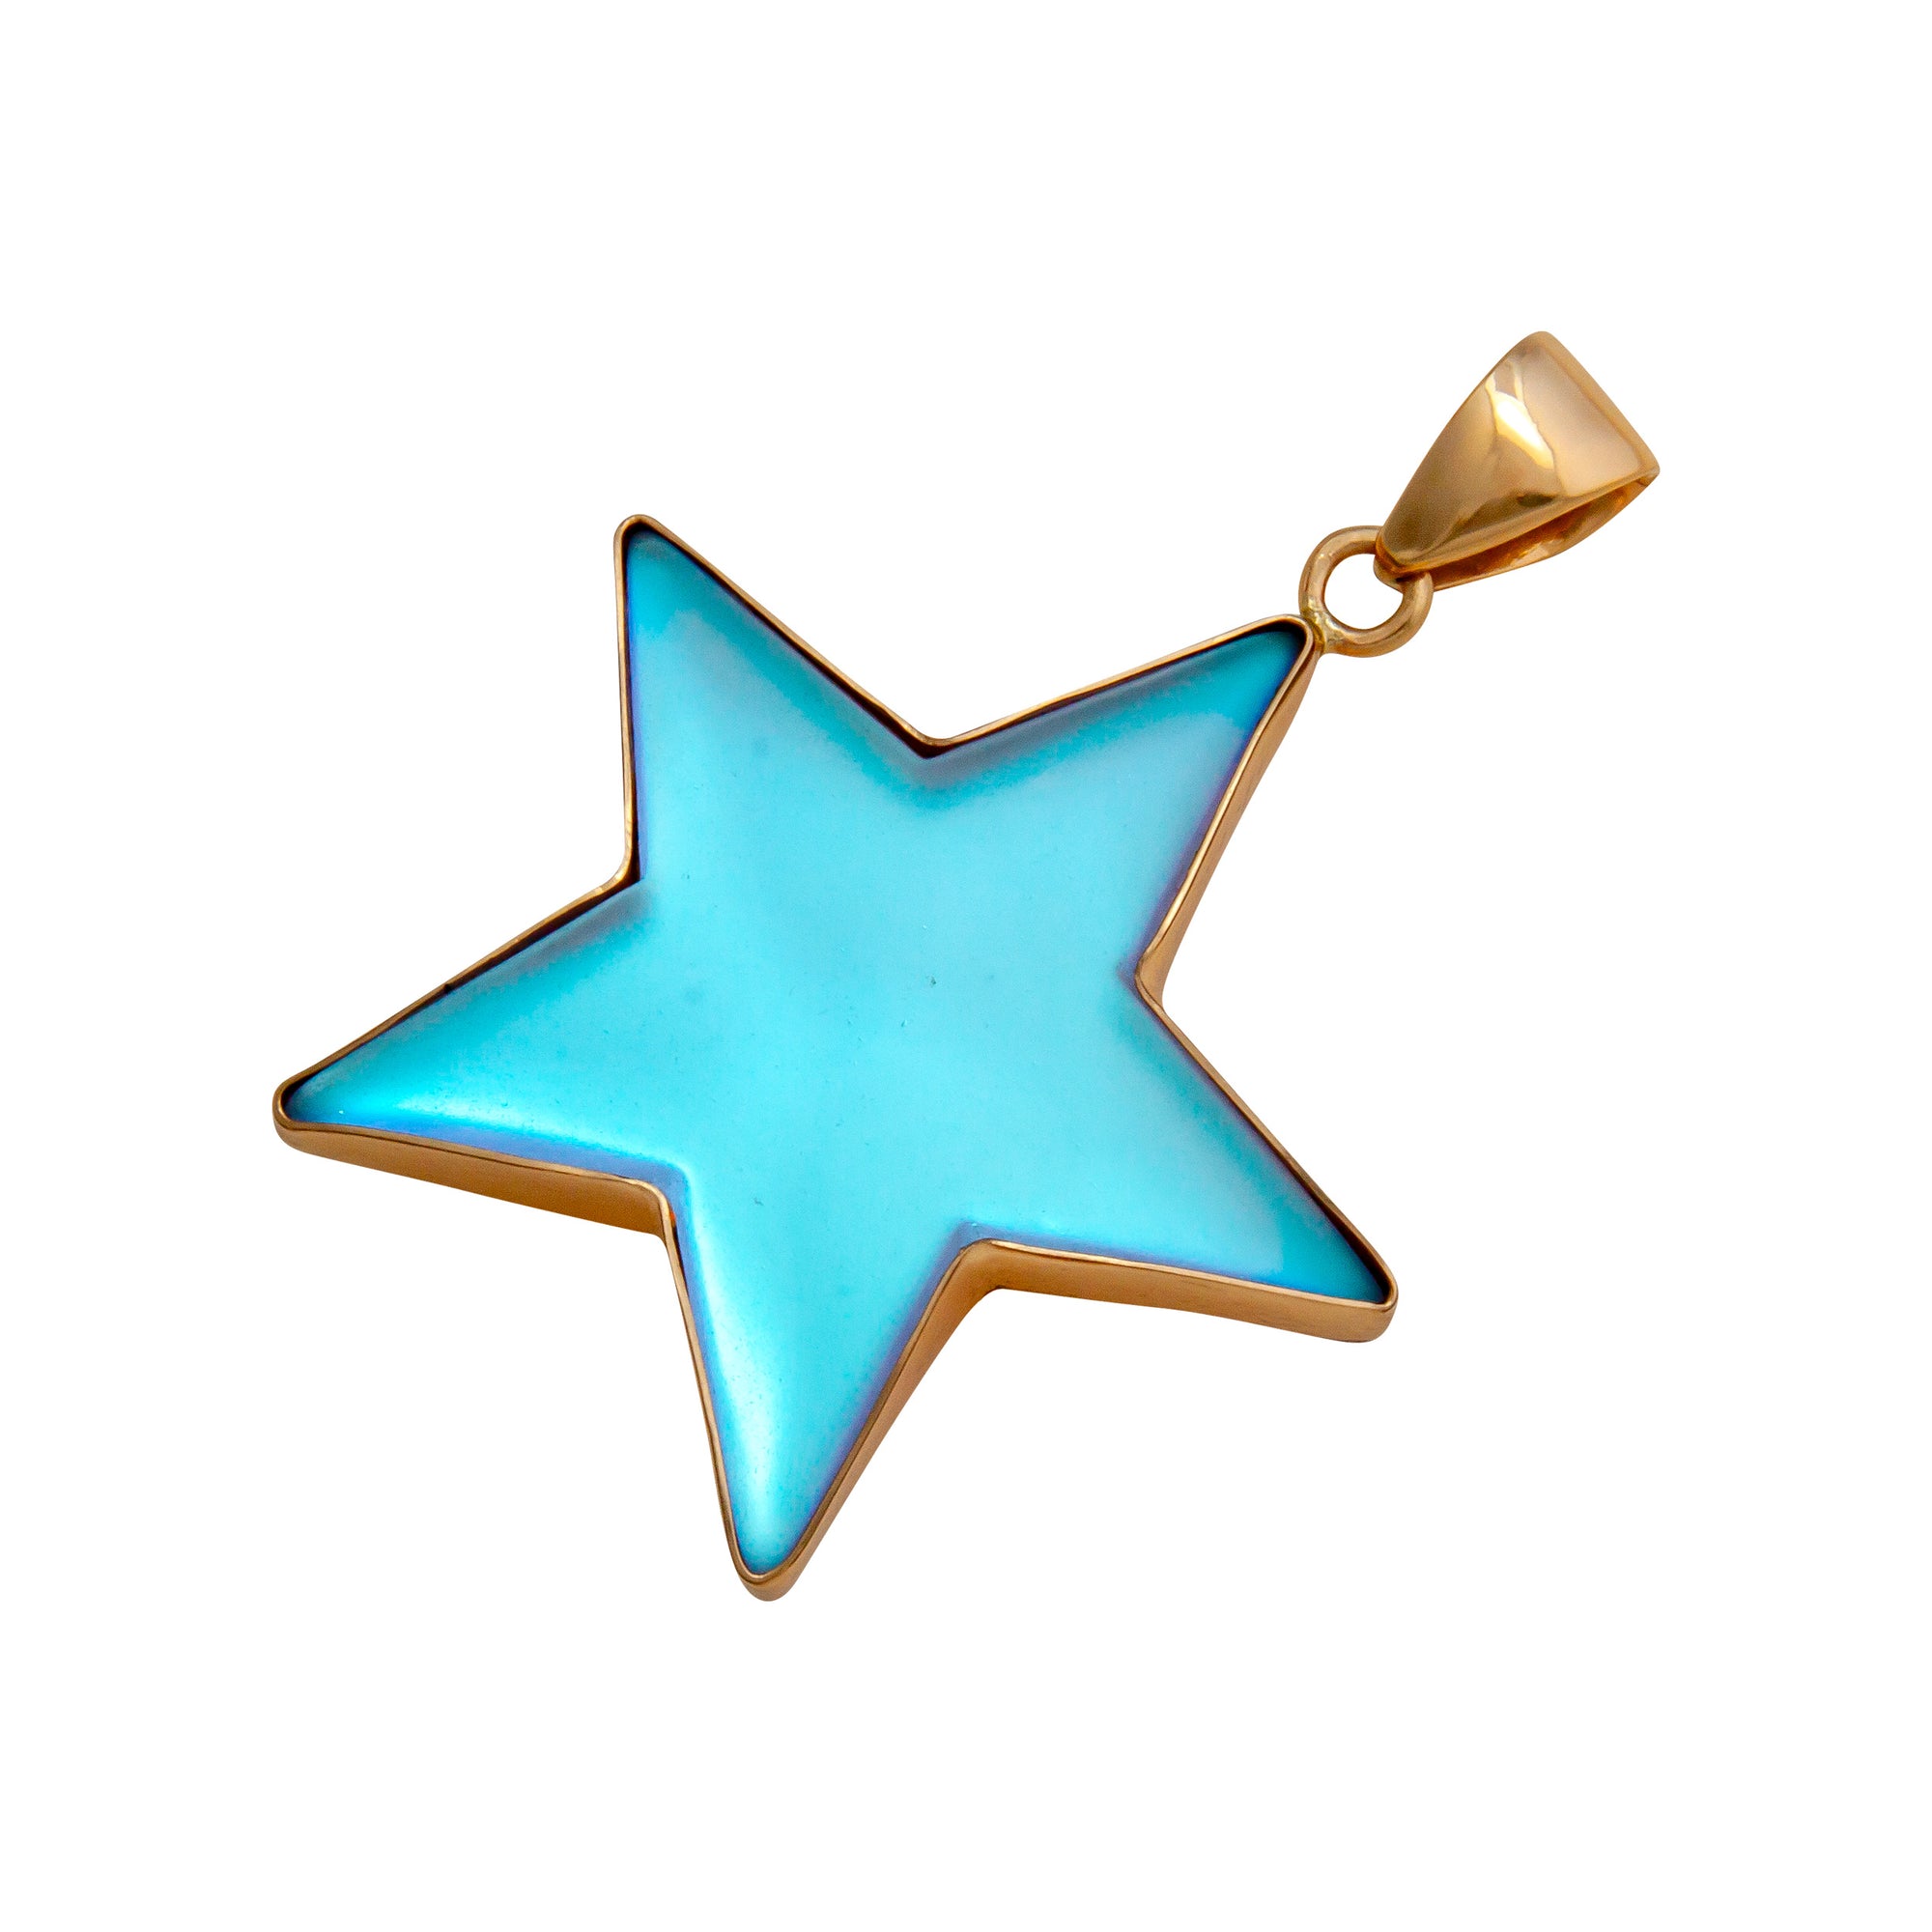 Alchemia Luminite Star Pendant - Large | Charles Albert Jewelry